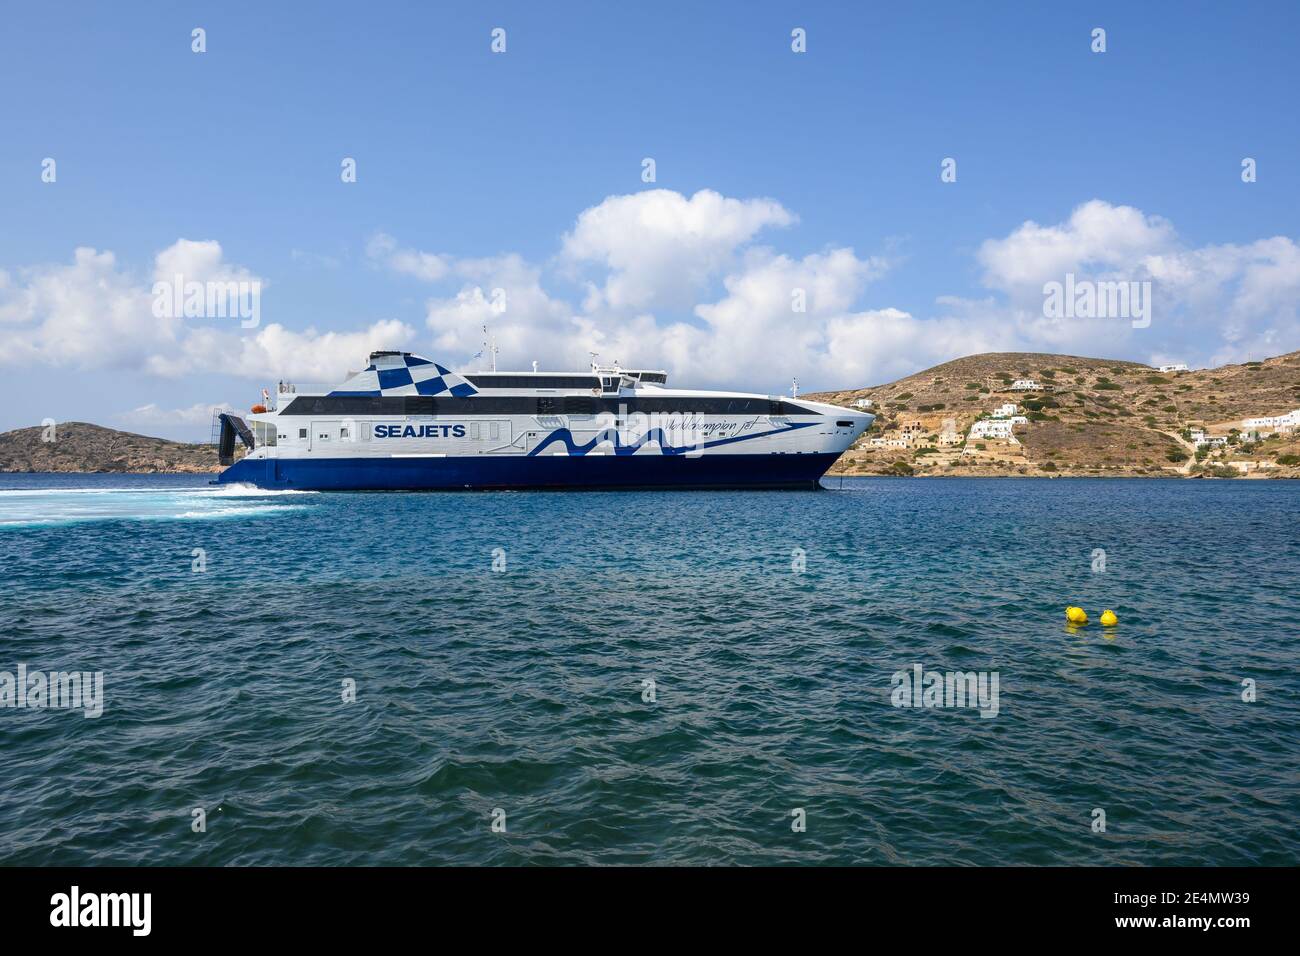 IOS, Griechenland - 19. September 2020 - Weltmeister Jet Seajets, eine der schnellsten Hochgeschwindigkeitsfähren, kommt im Hafen von iOS Island, Griechenland an Stockfoto